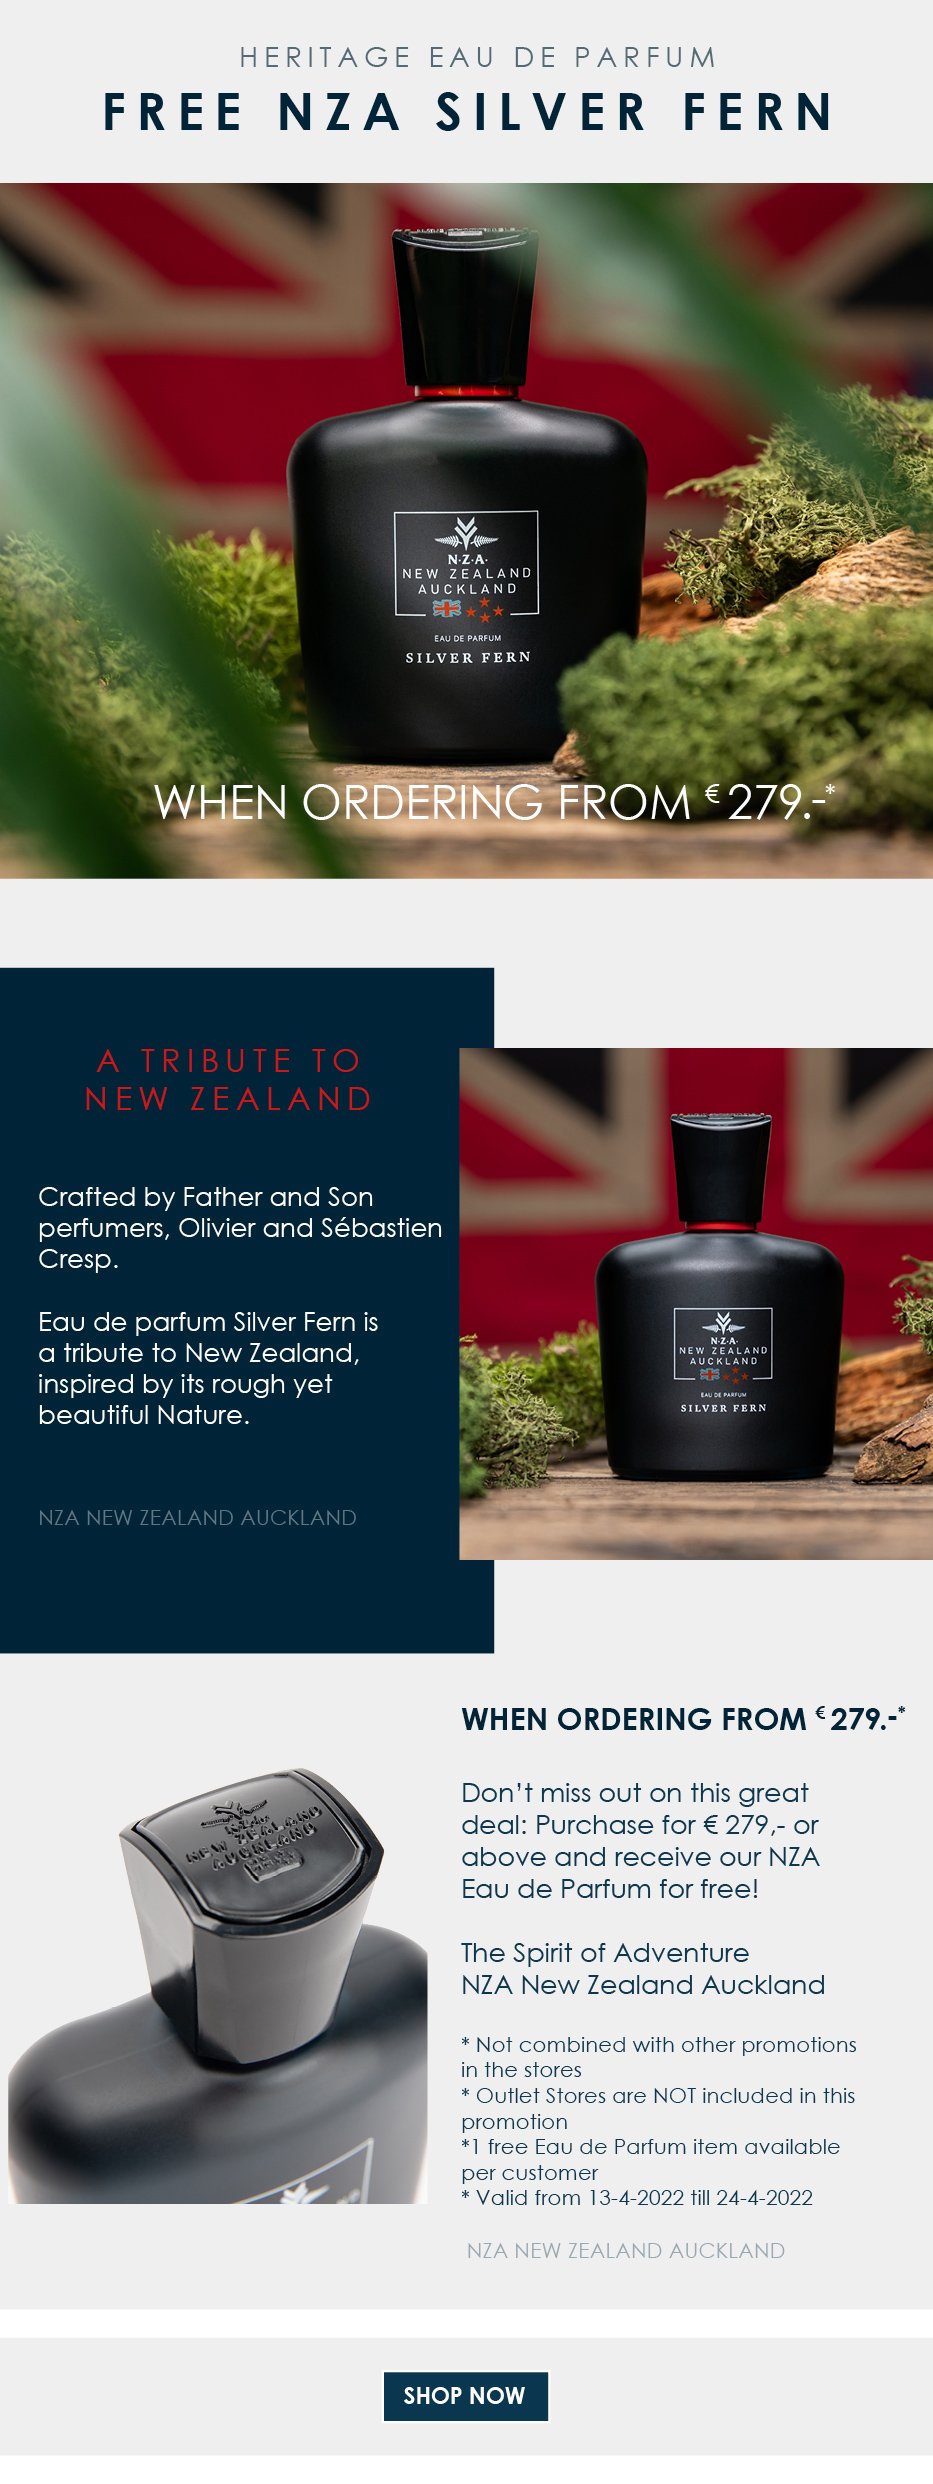 Onhandig Scorch dief NZA New Zealand Auckland NL: Free Eau de Parfum Silver Fern. | Milled